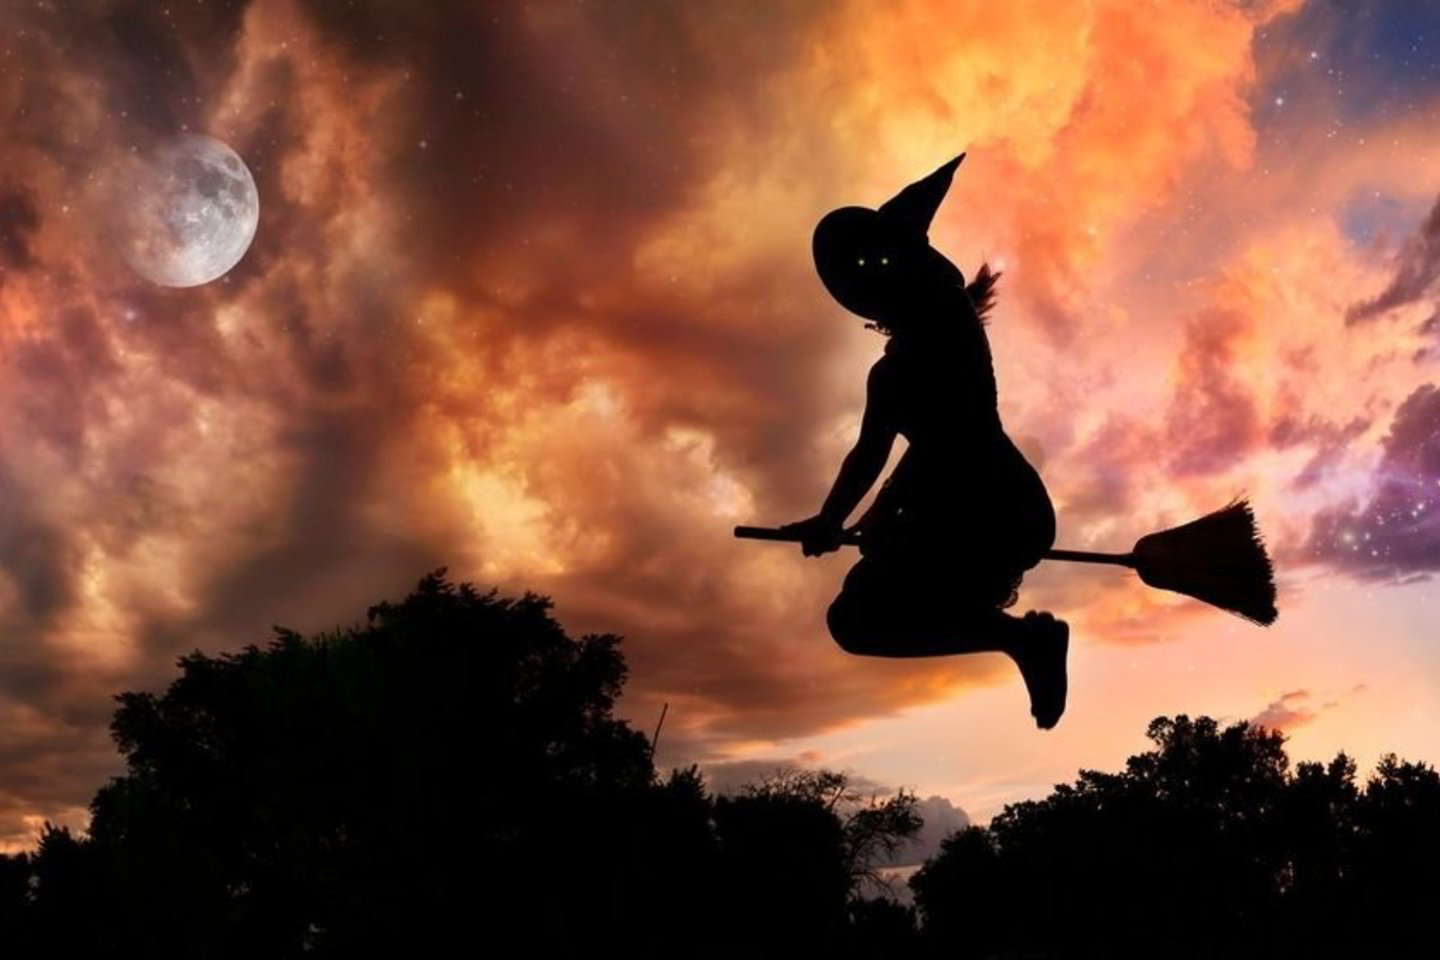 silhouettes halloween photoshoot ideas